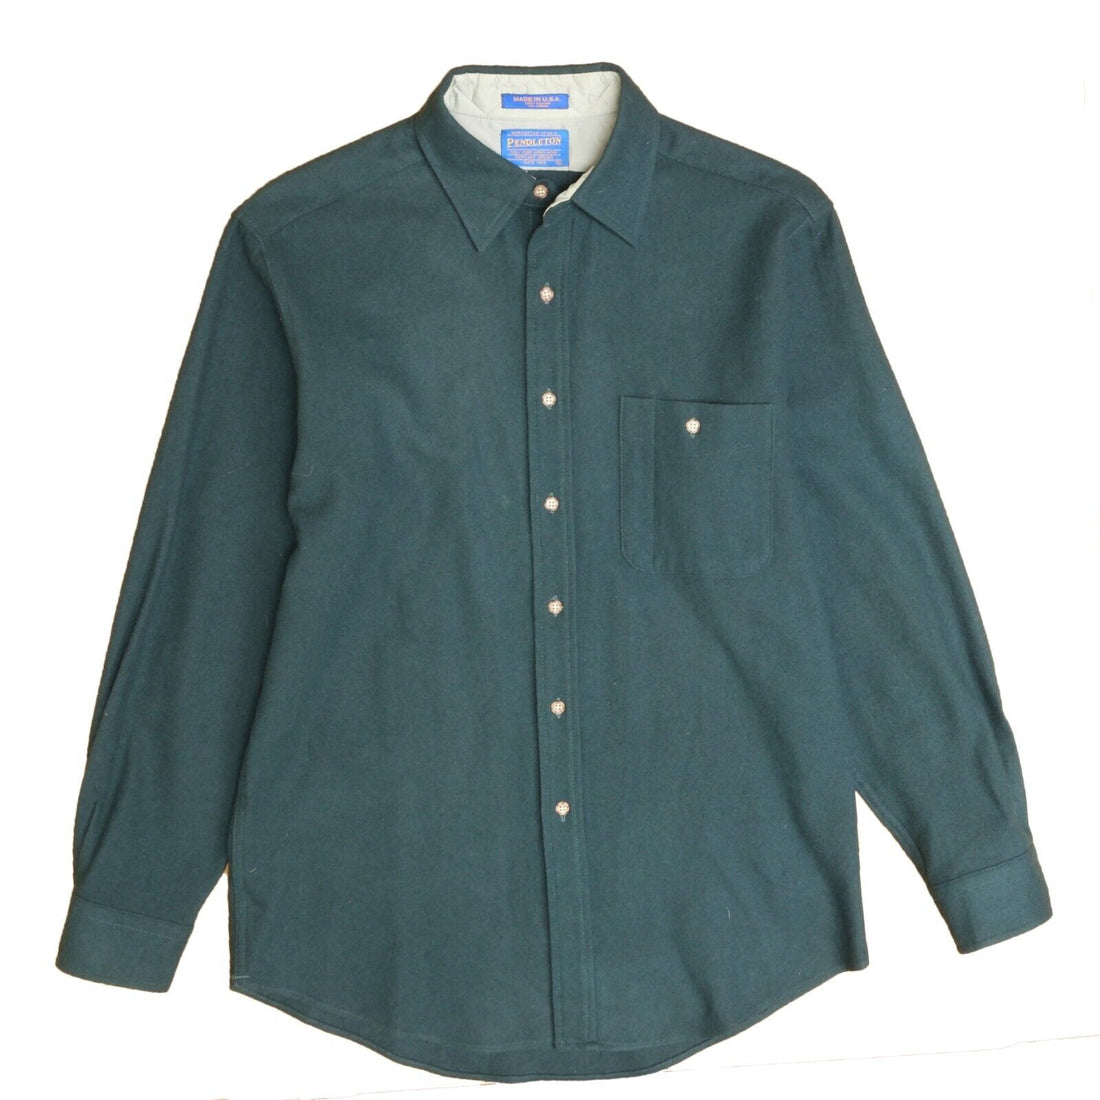 Vintage Pendleton Trail Wool Button Up Shirt Size Medium Green